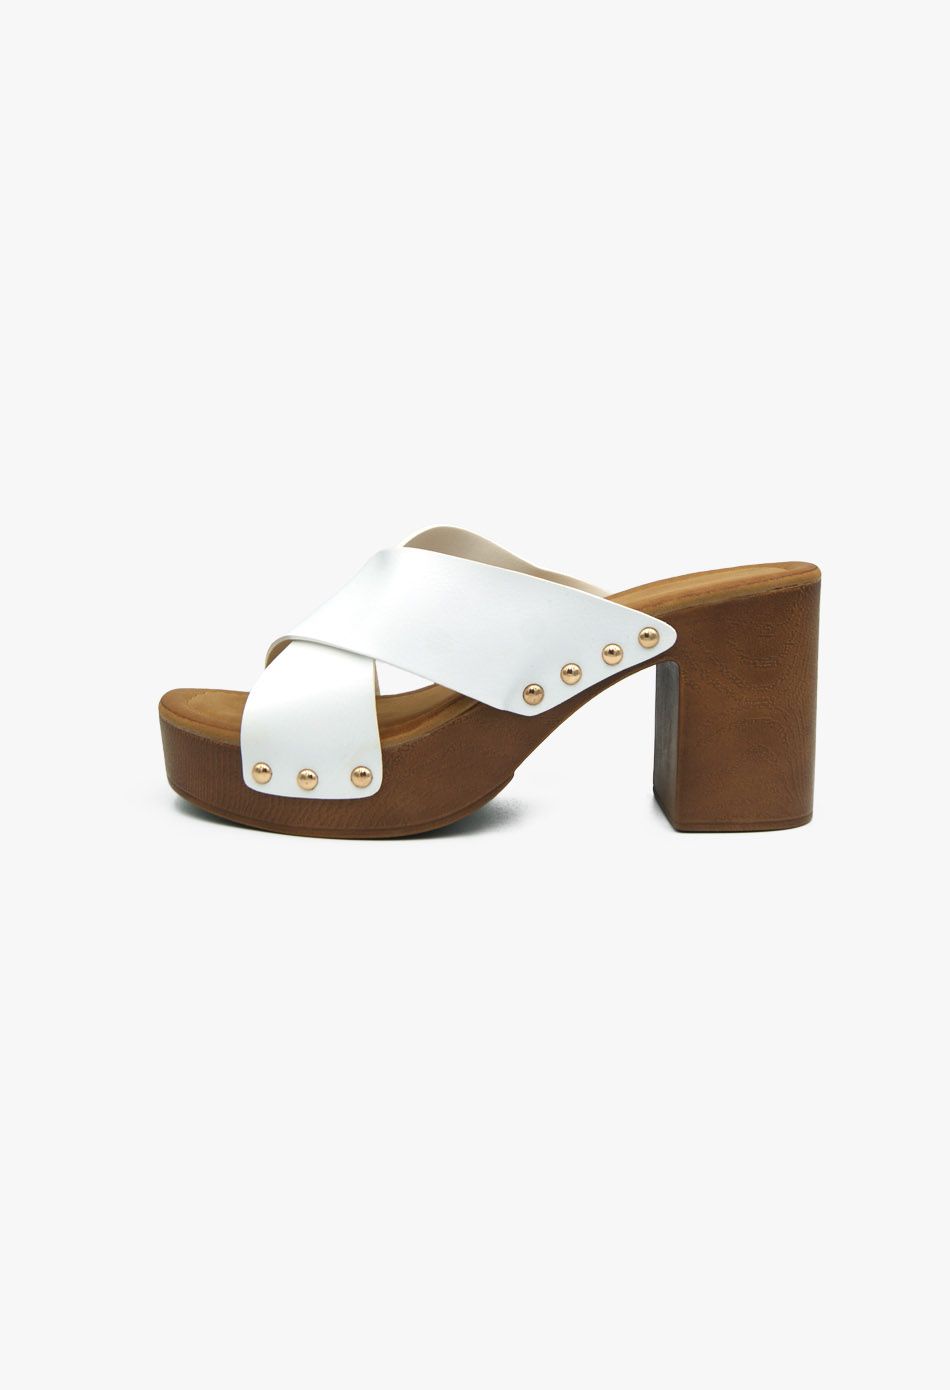 Τσόκαρα με Μπαρέτα και Χοντρό Ψηλό Τακούνι Λευκό / A8607-white Ανοιχτά Παπούτσια joya.gr